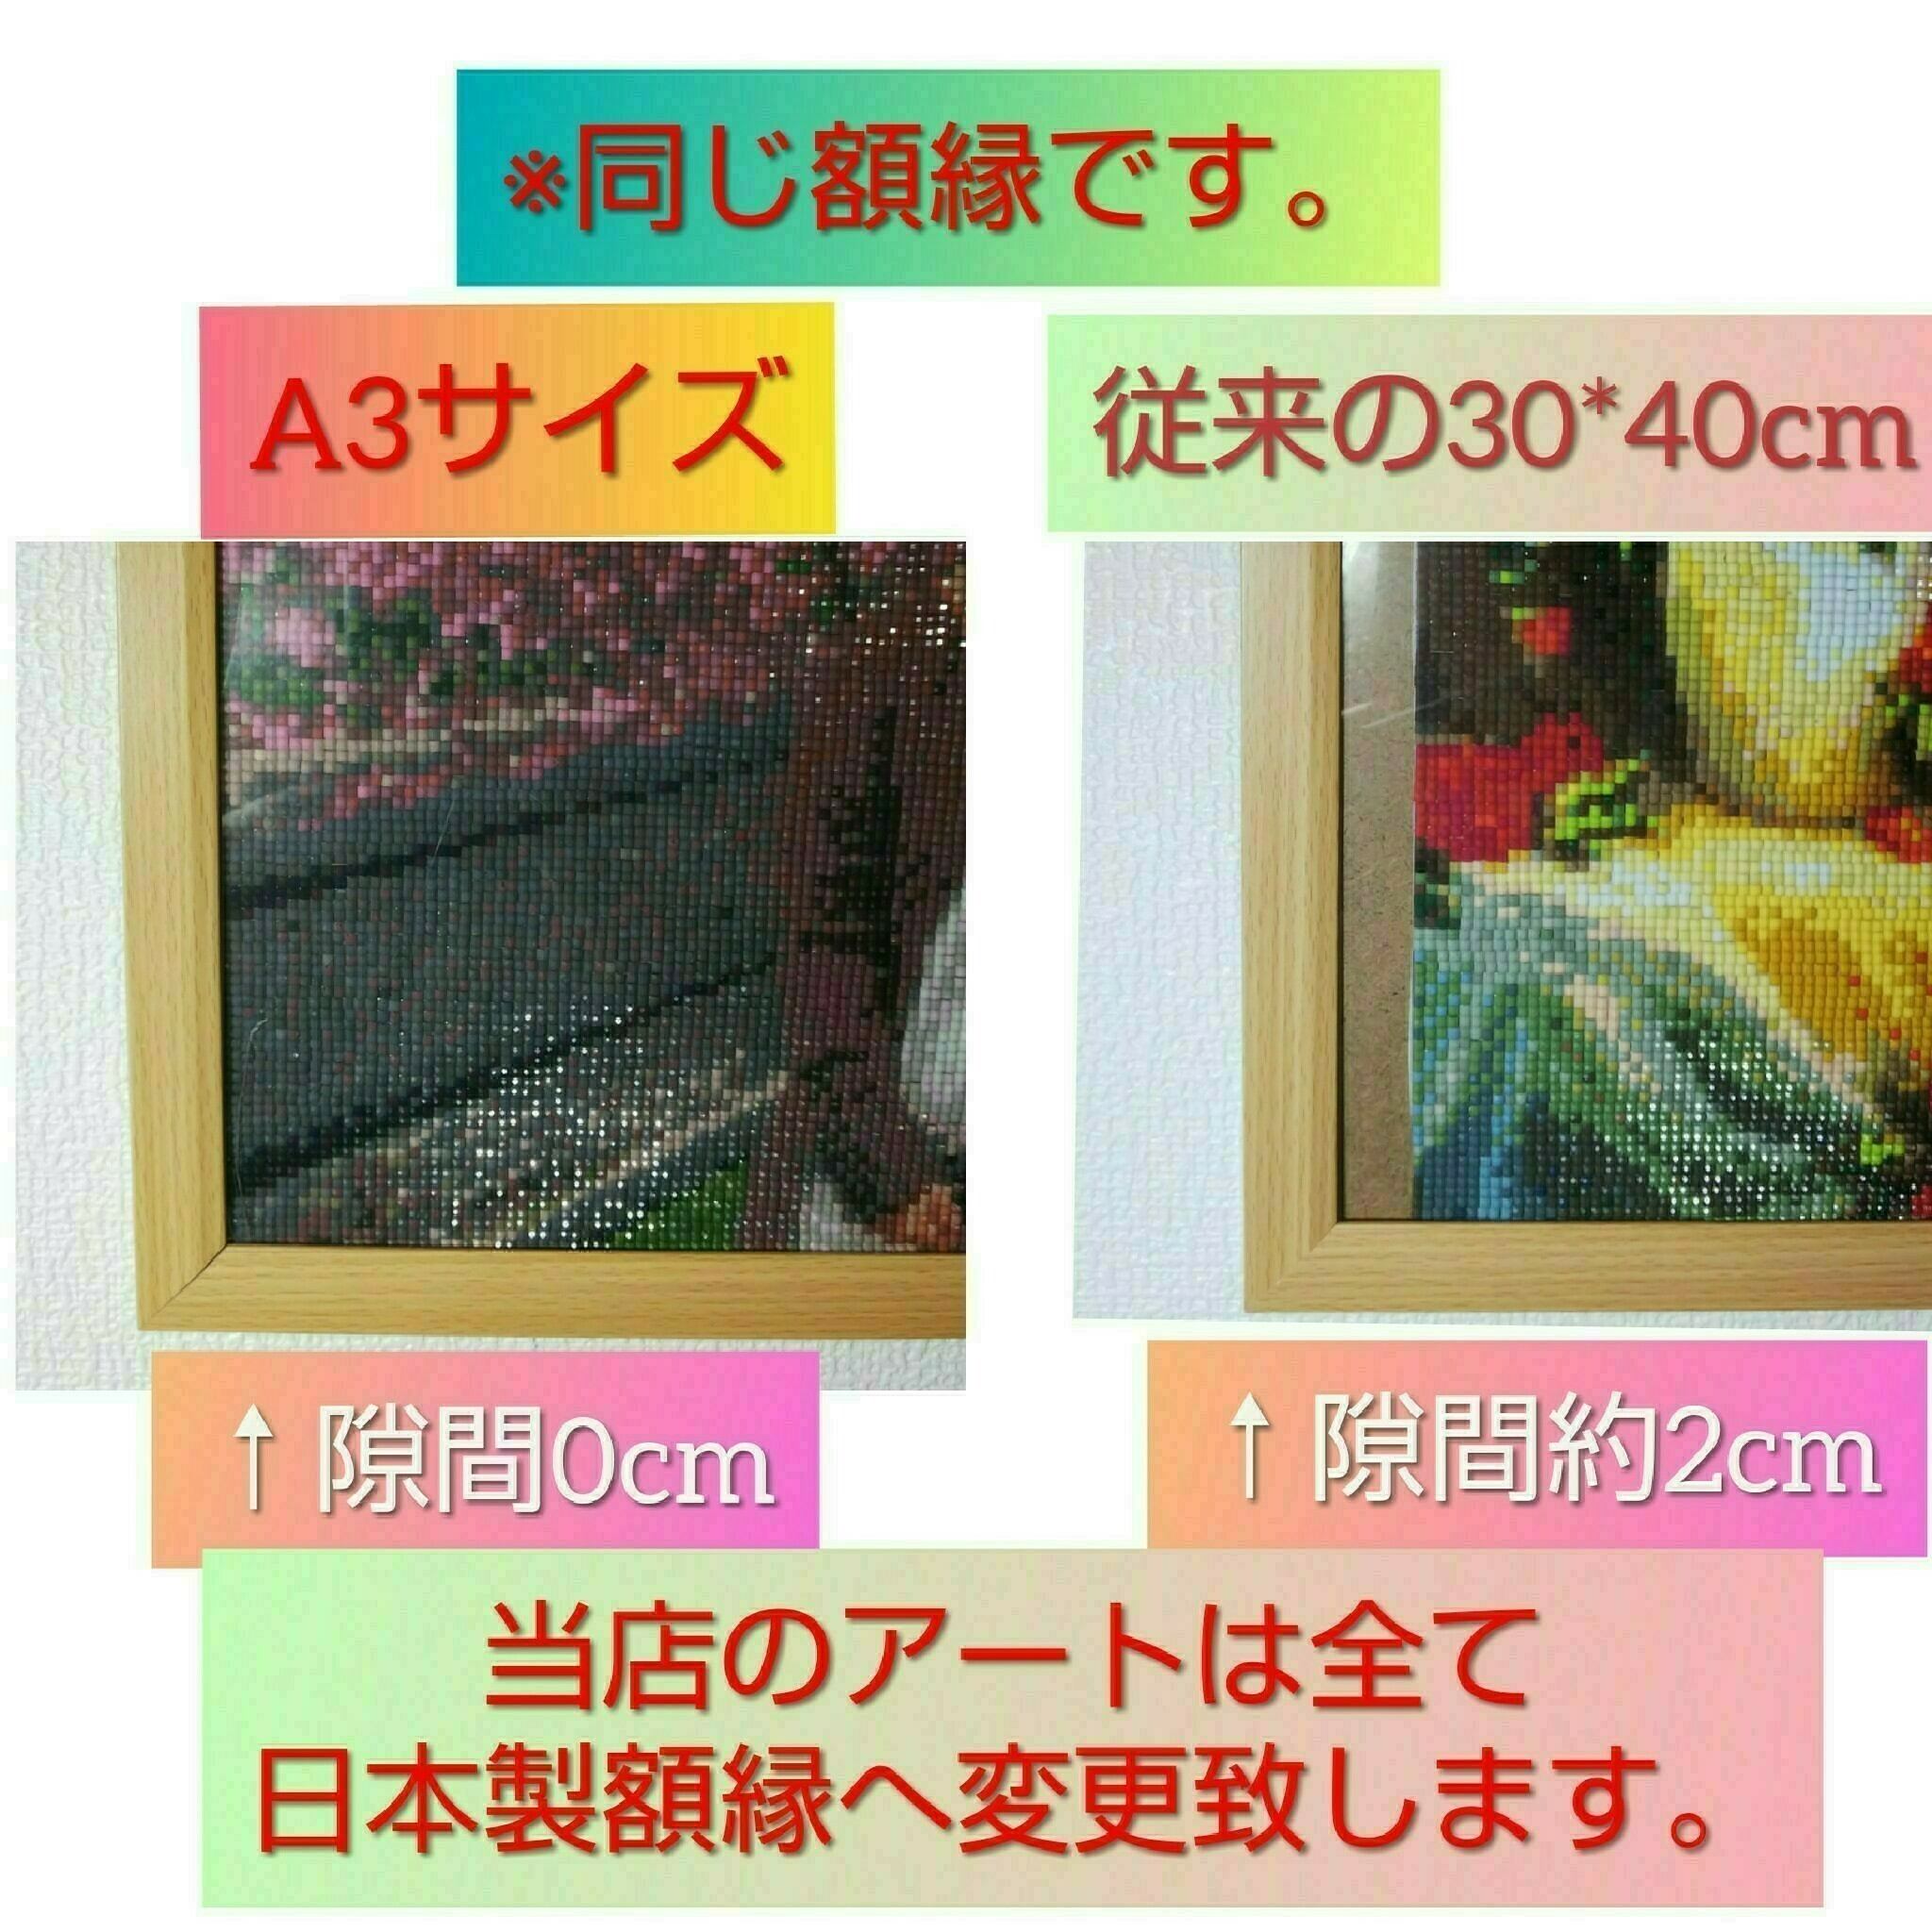 40×40サイズ 四角ビーズ【kuro-032】ダイヤモンドアート